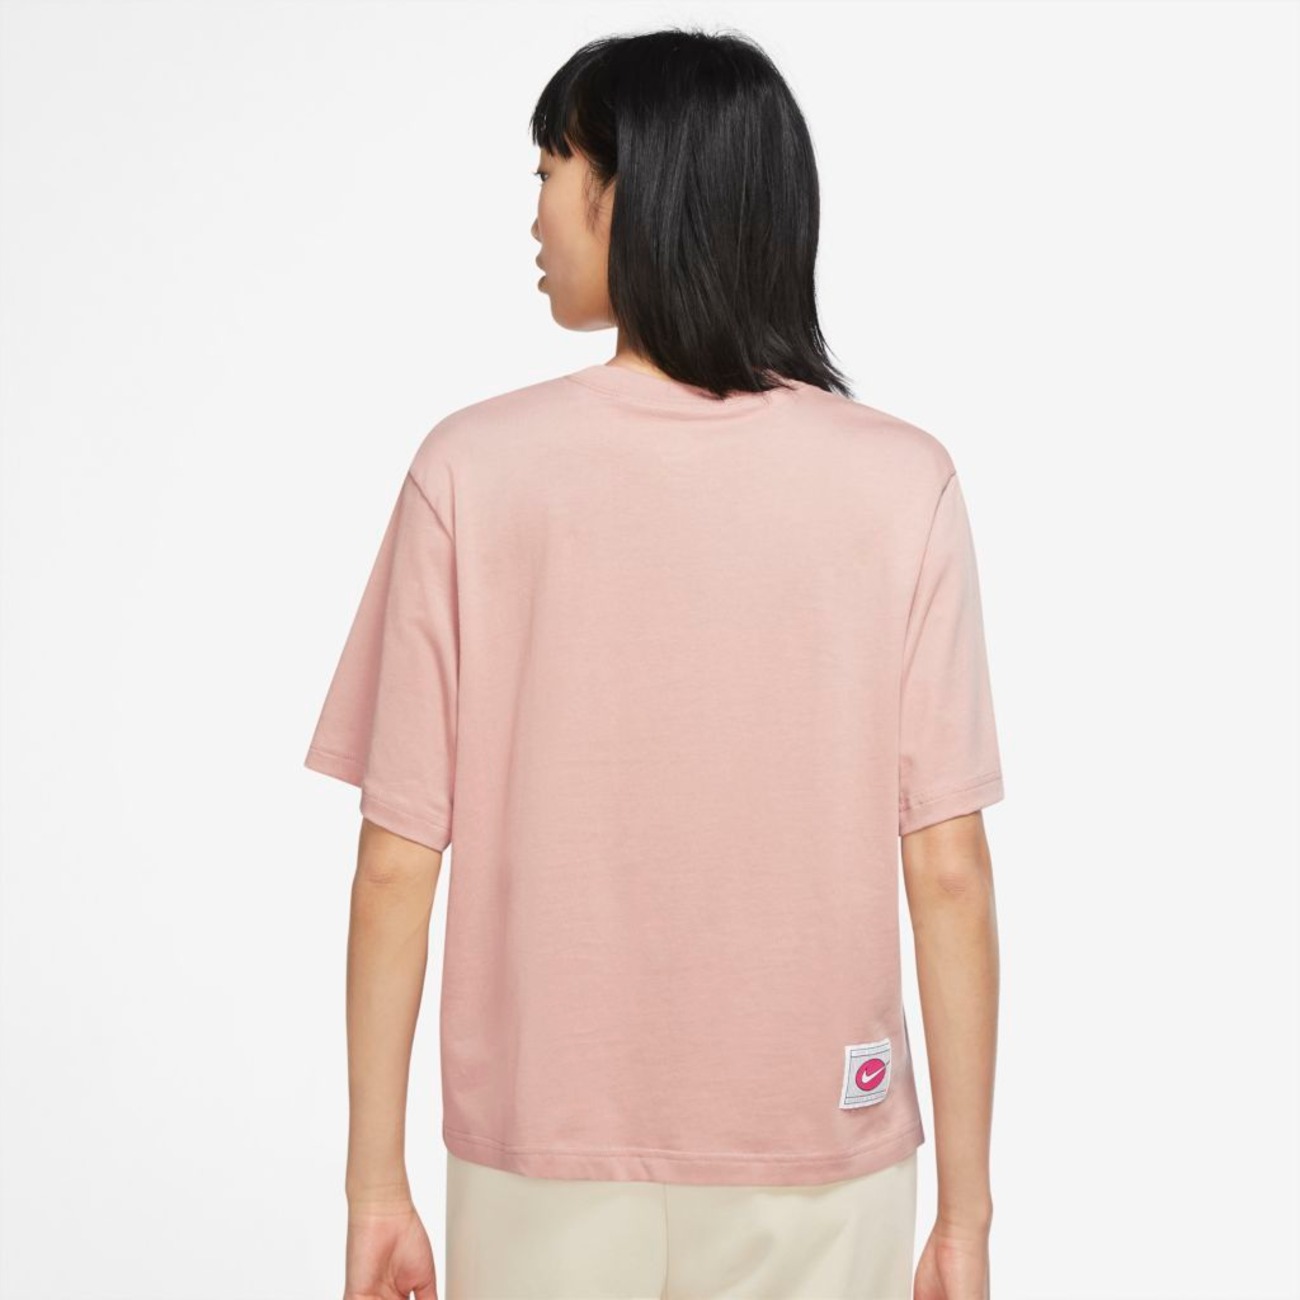 Camiseta Nike Icon Clash Run Feminina - Tam: M - Shopping TudoAzul